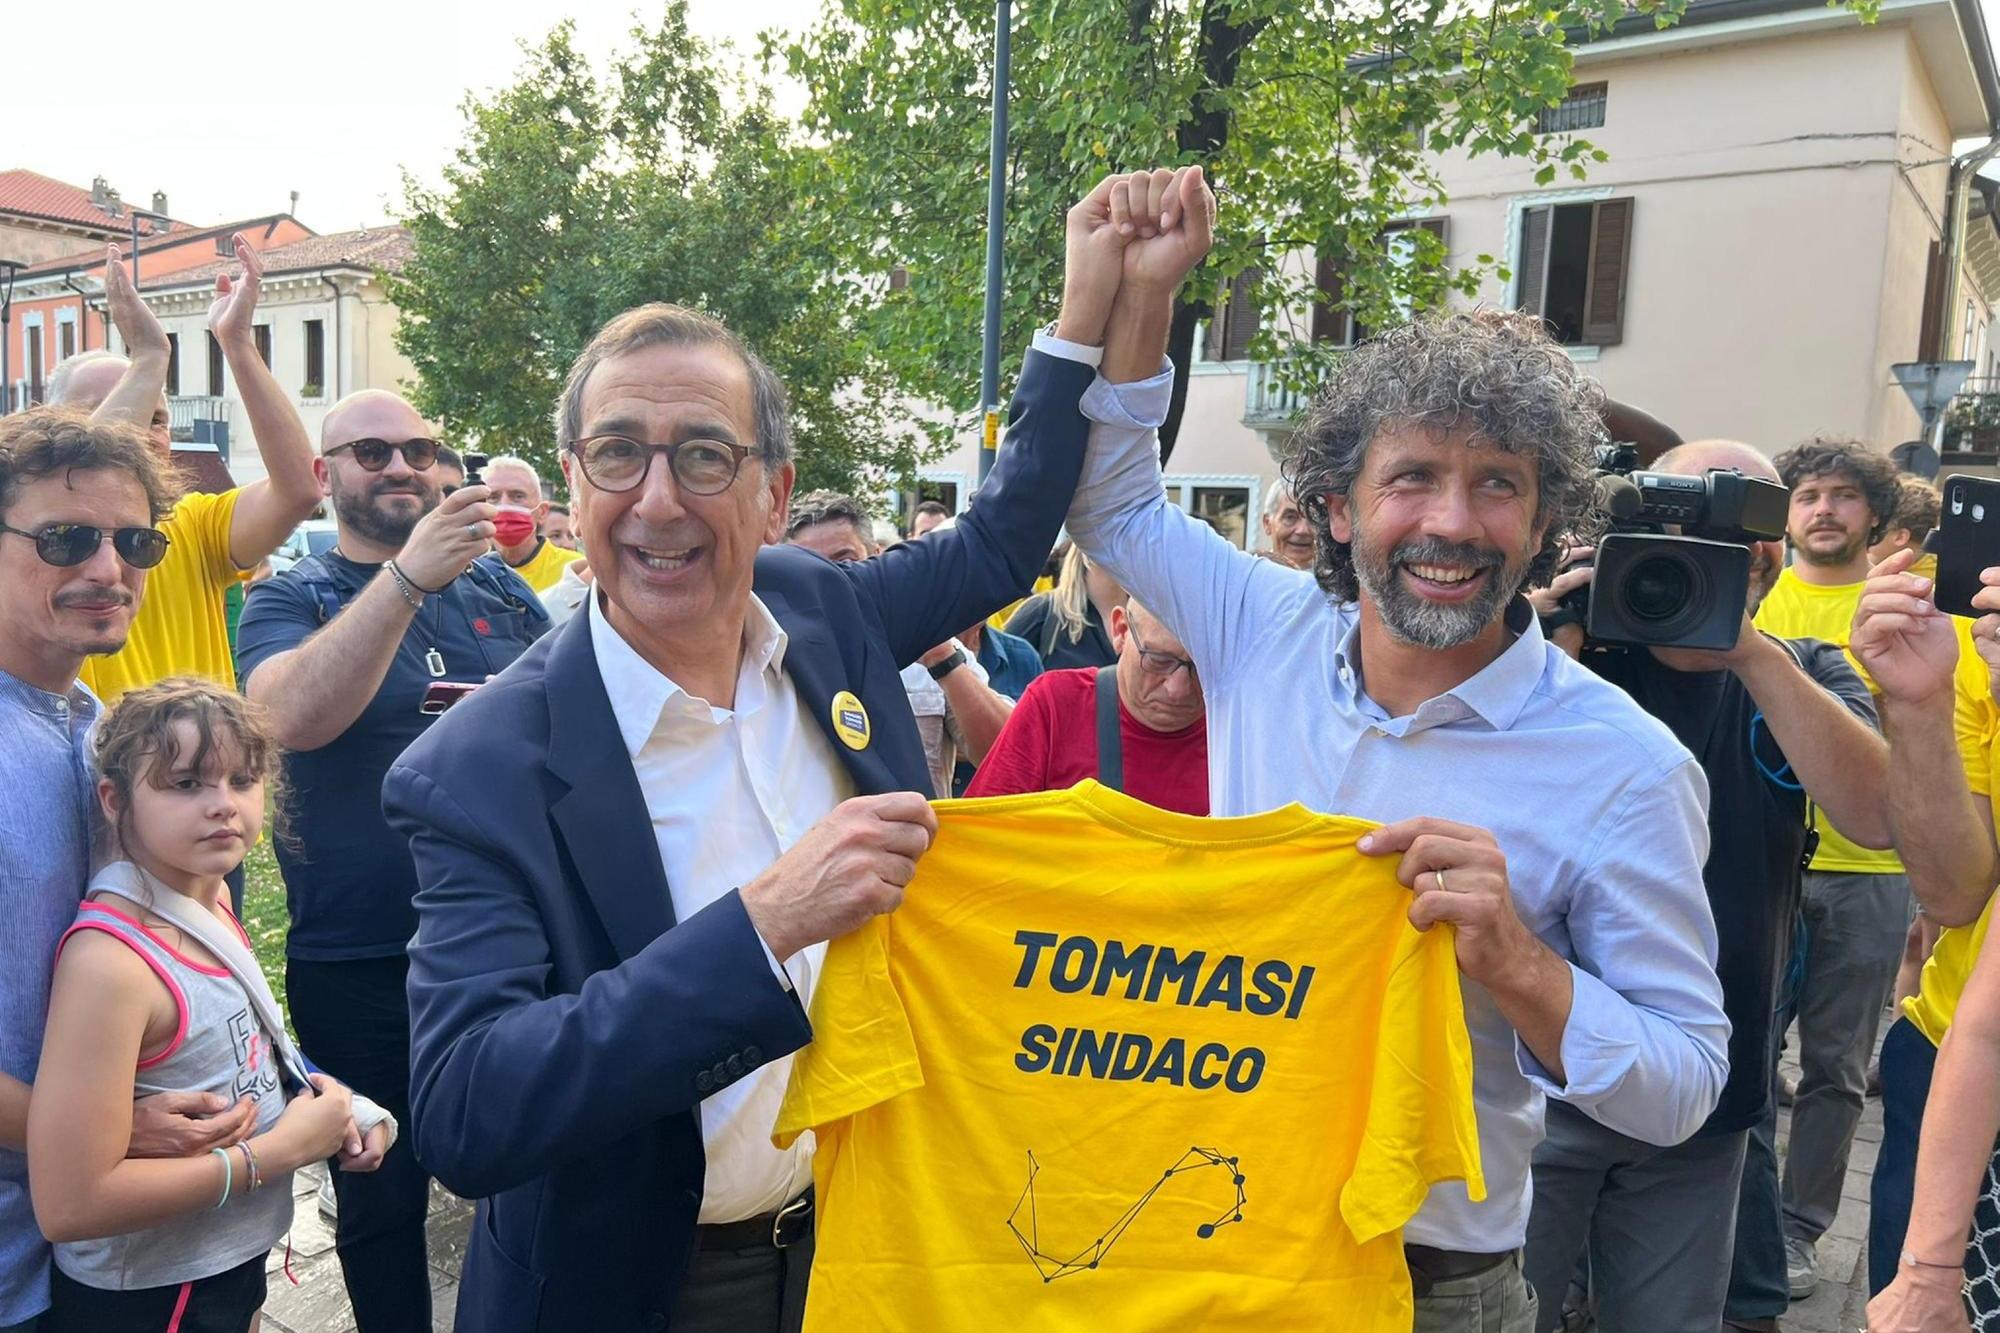 Tommasi conquista Verona, da nord a sud il centrosinistra vince in 7 città su 13